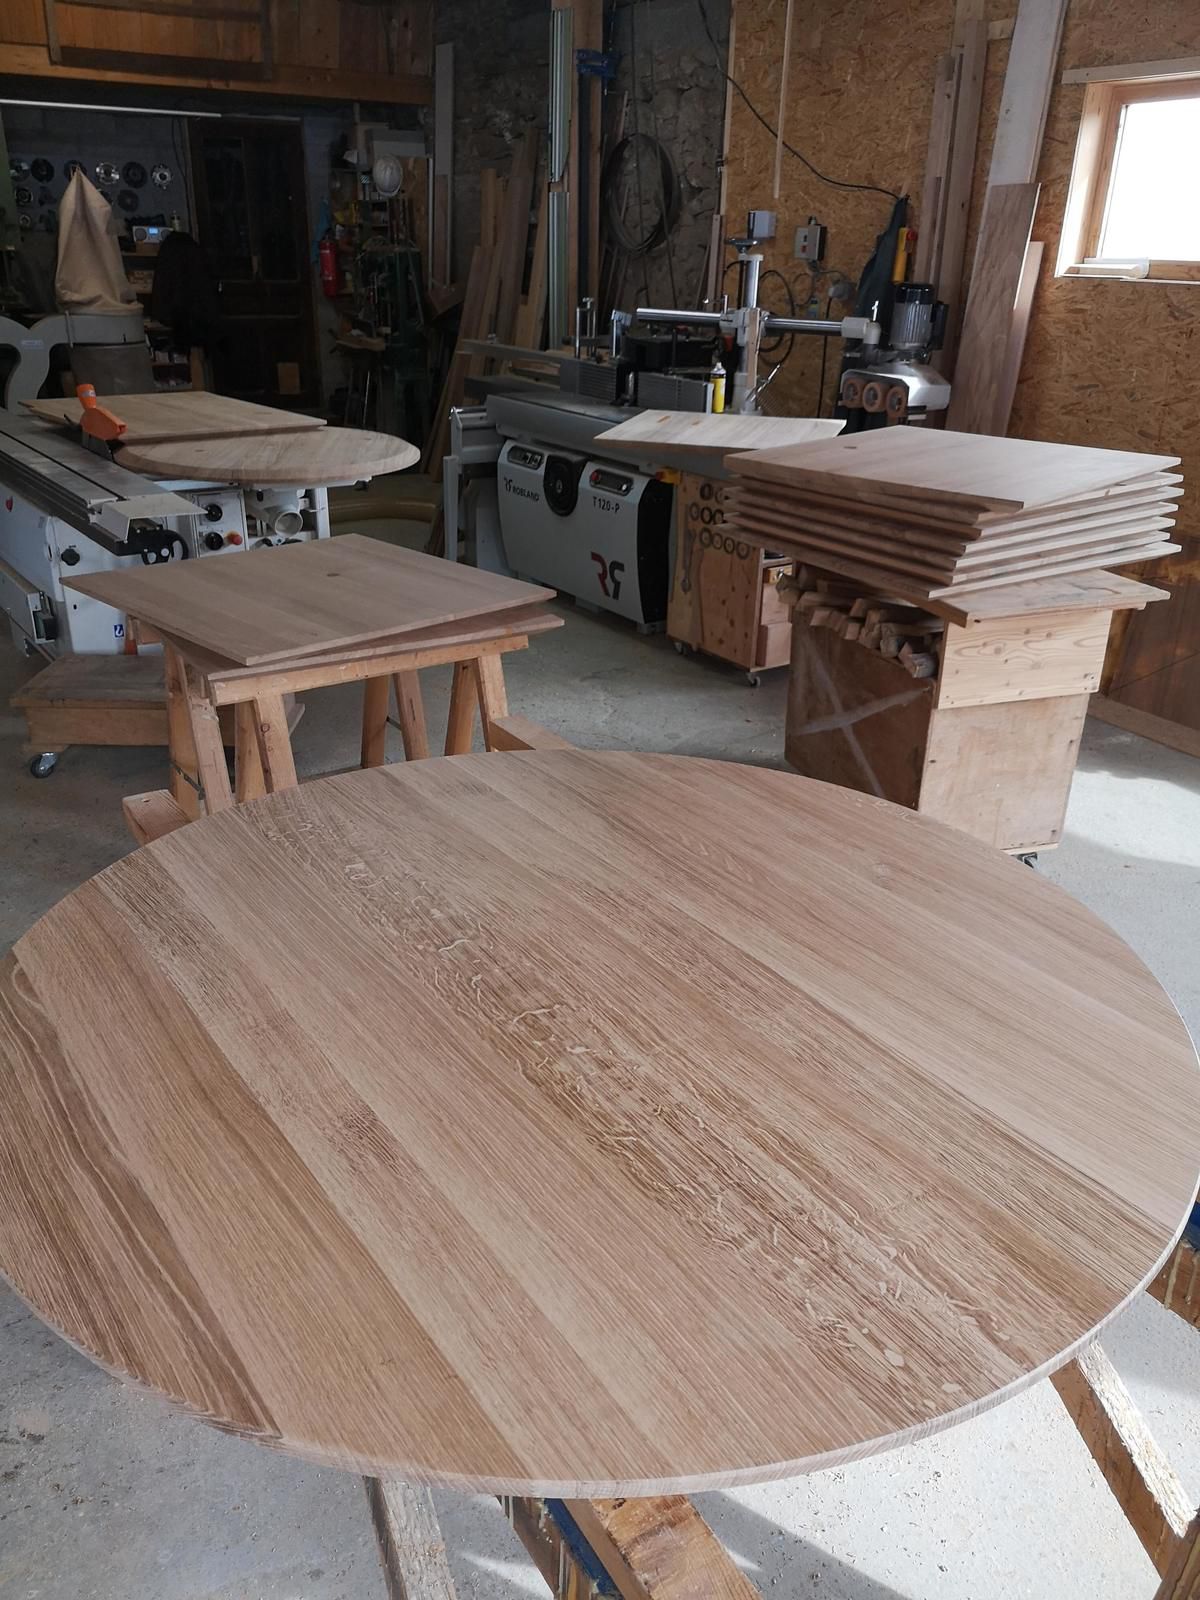 Réaliser un plateau de table en bois